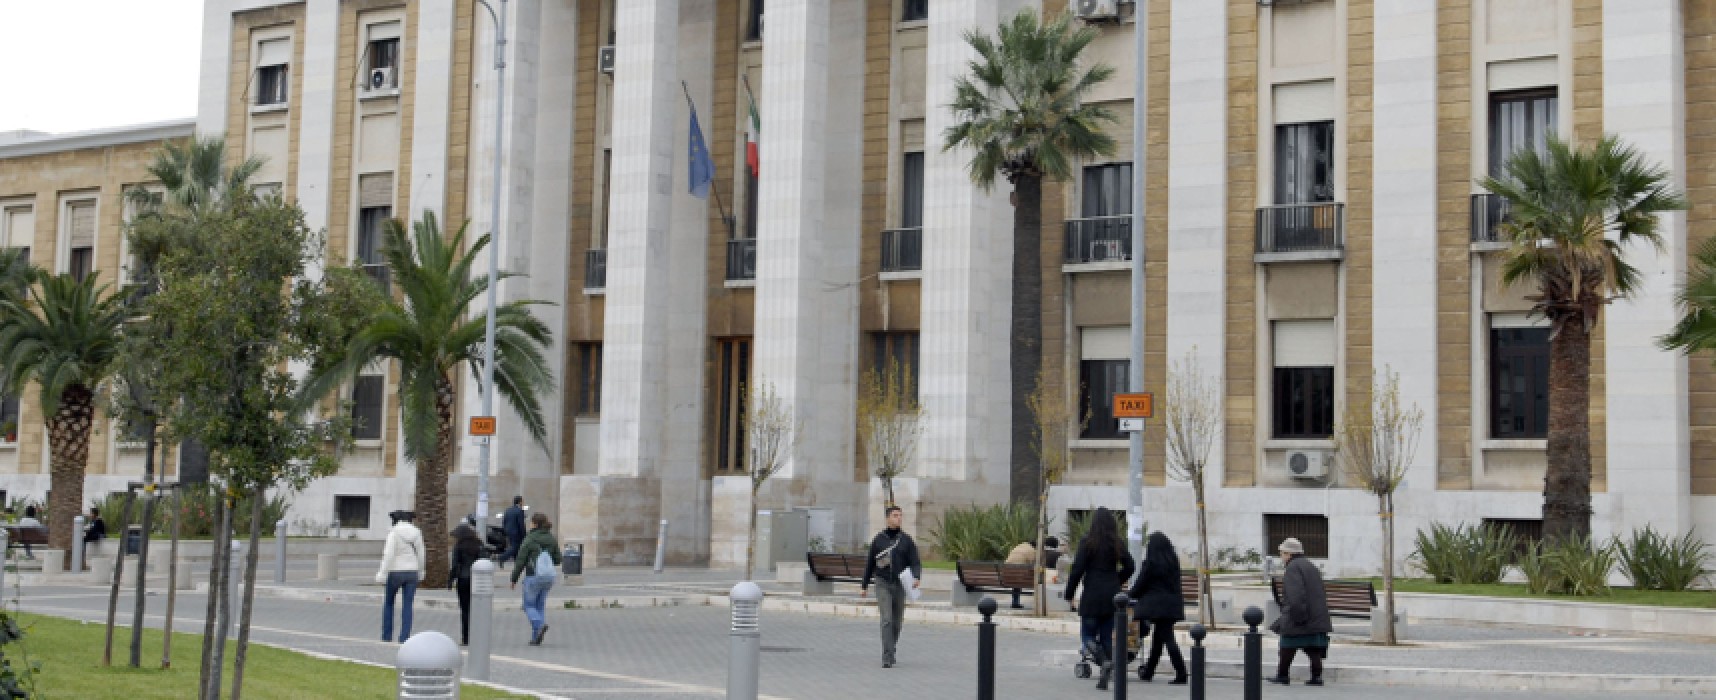 Policlinico di Bari, 11 borse di studio per attività di ricerca in ambito scientifico / DETTAGLI